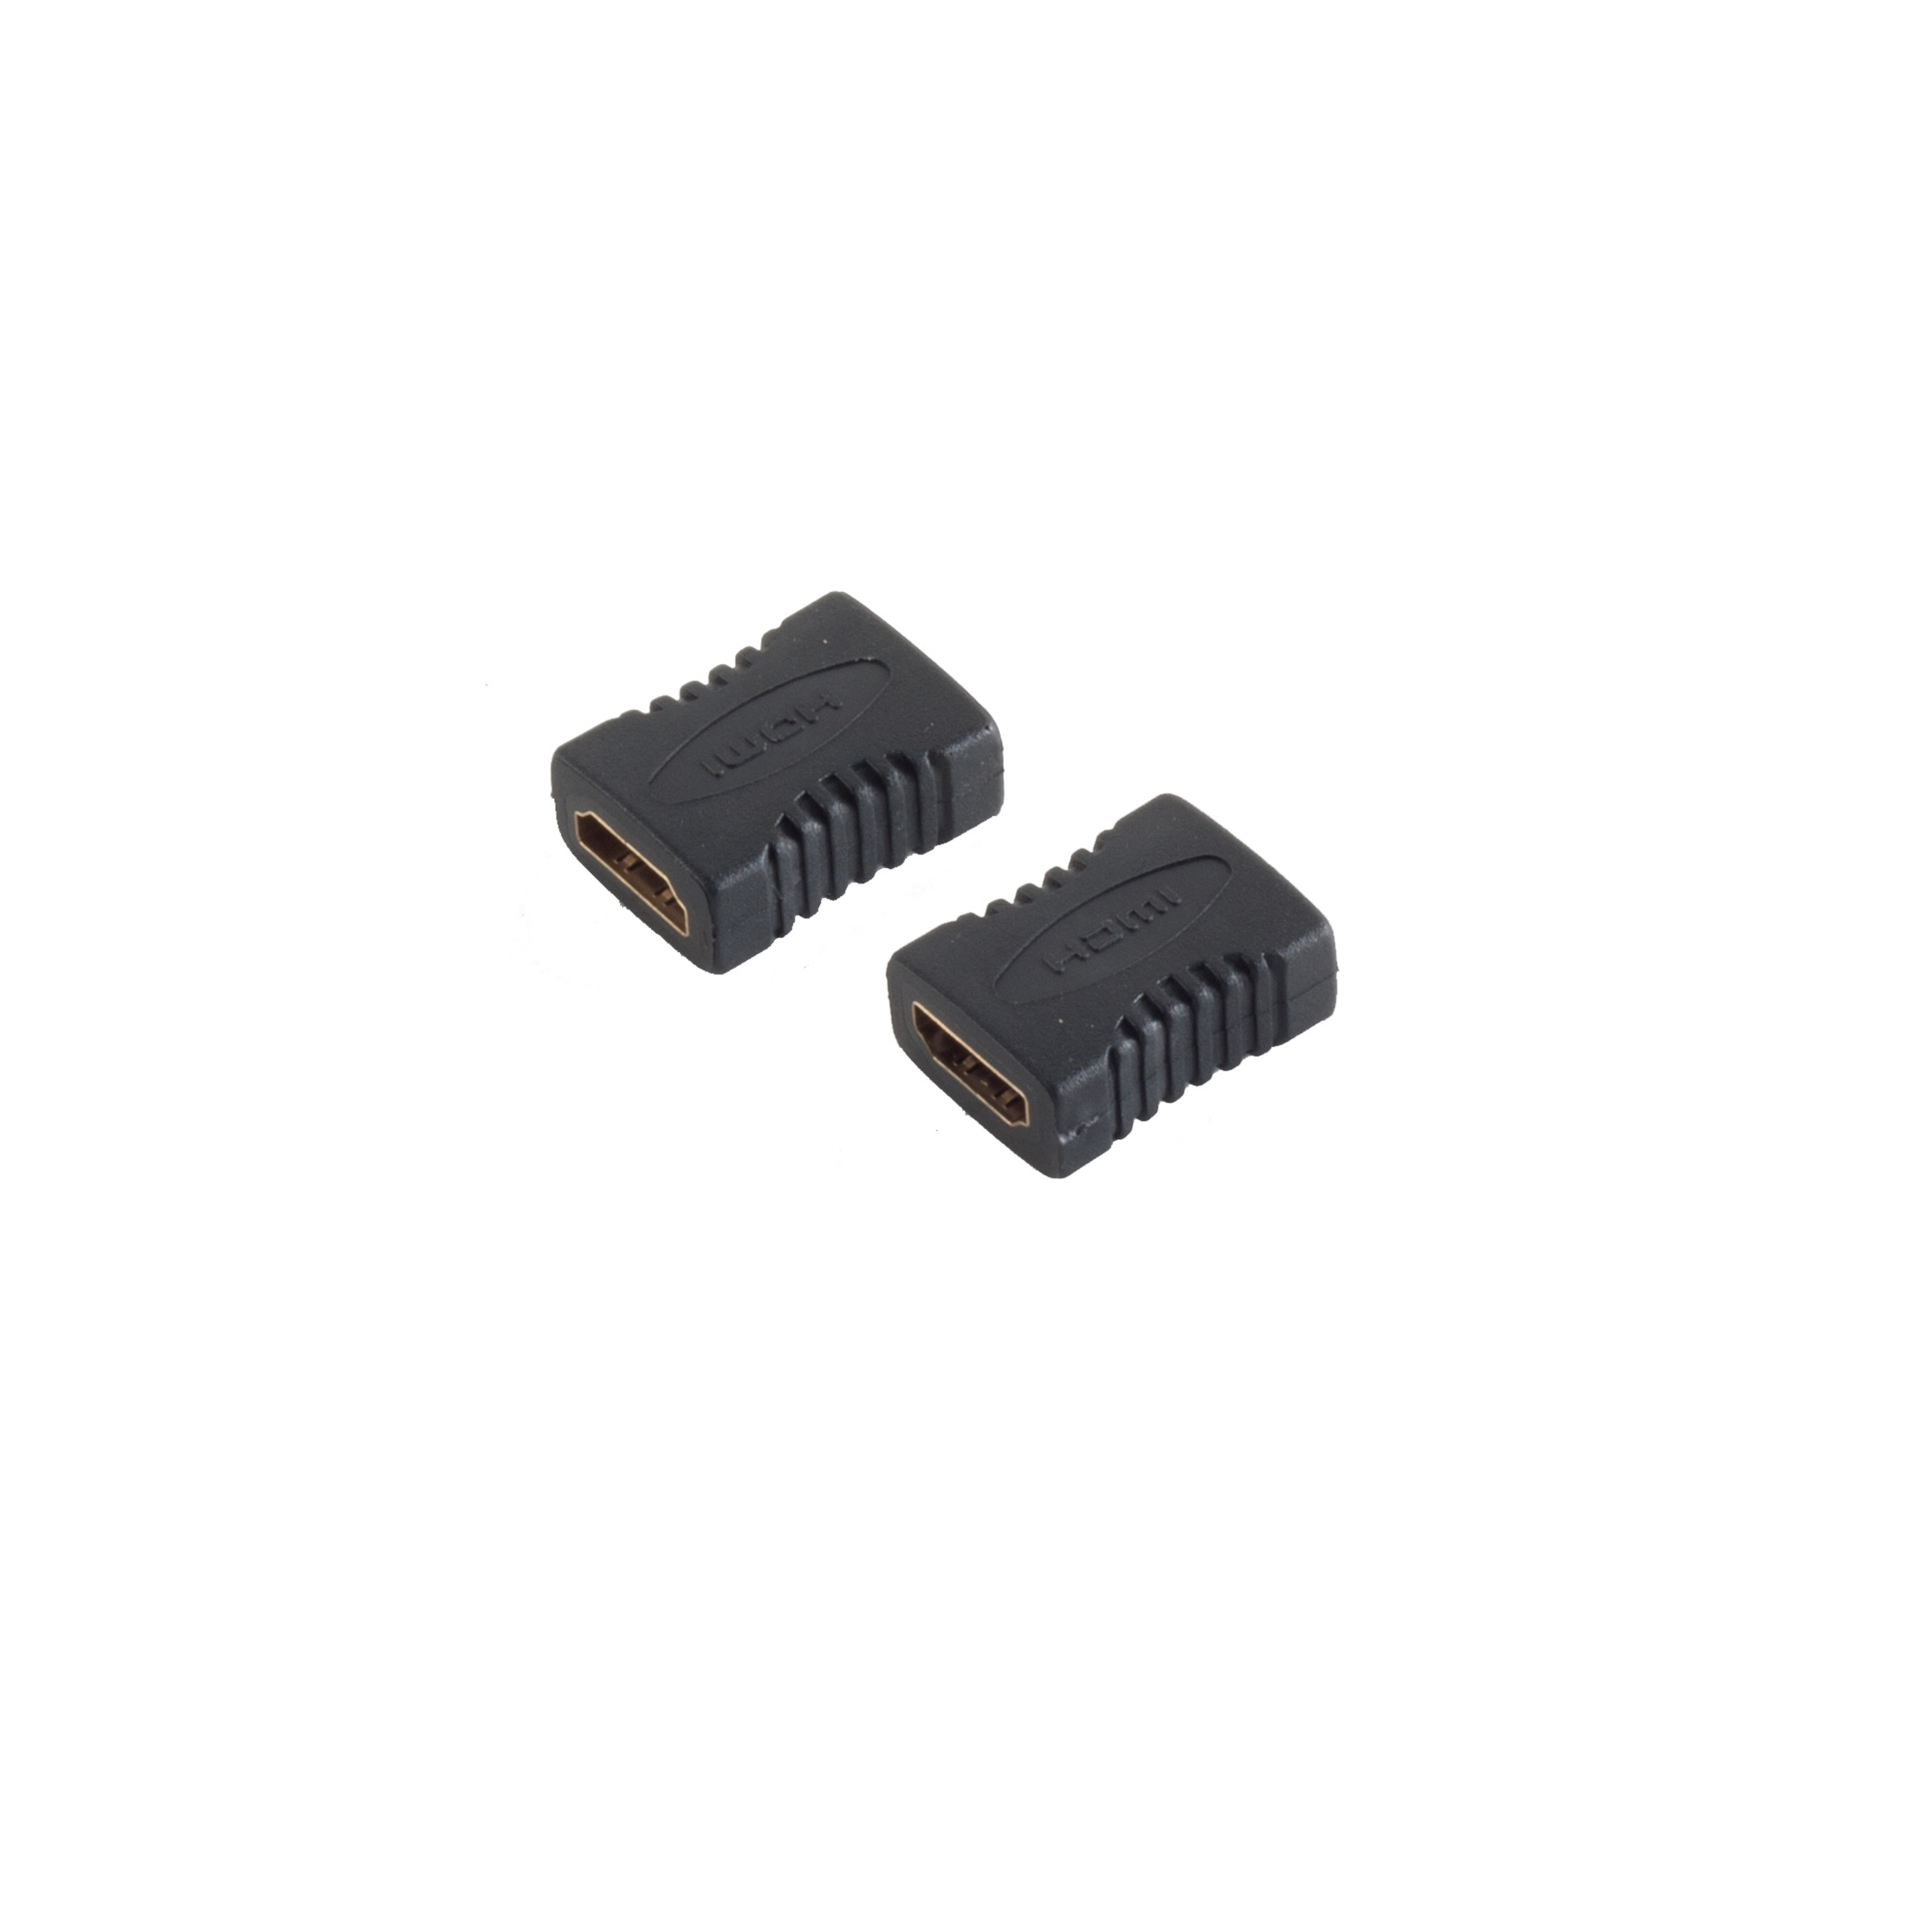 HDMI-Buchse / Adapter Adapter CONNECTIVITY S/CONN verg. HDMI HDMI-Buchse MAXIMUM